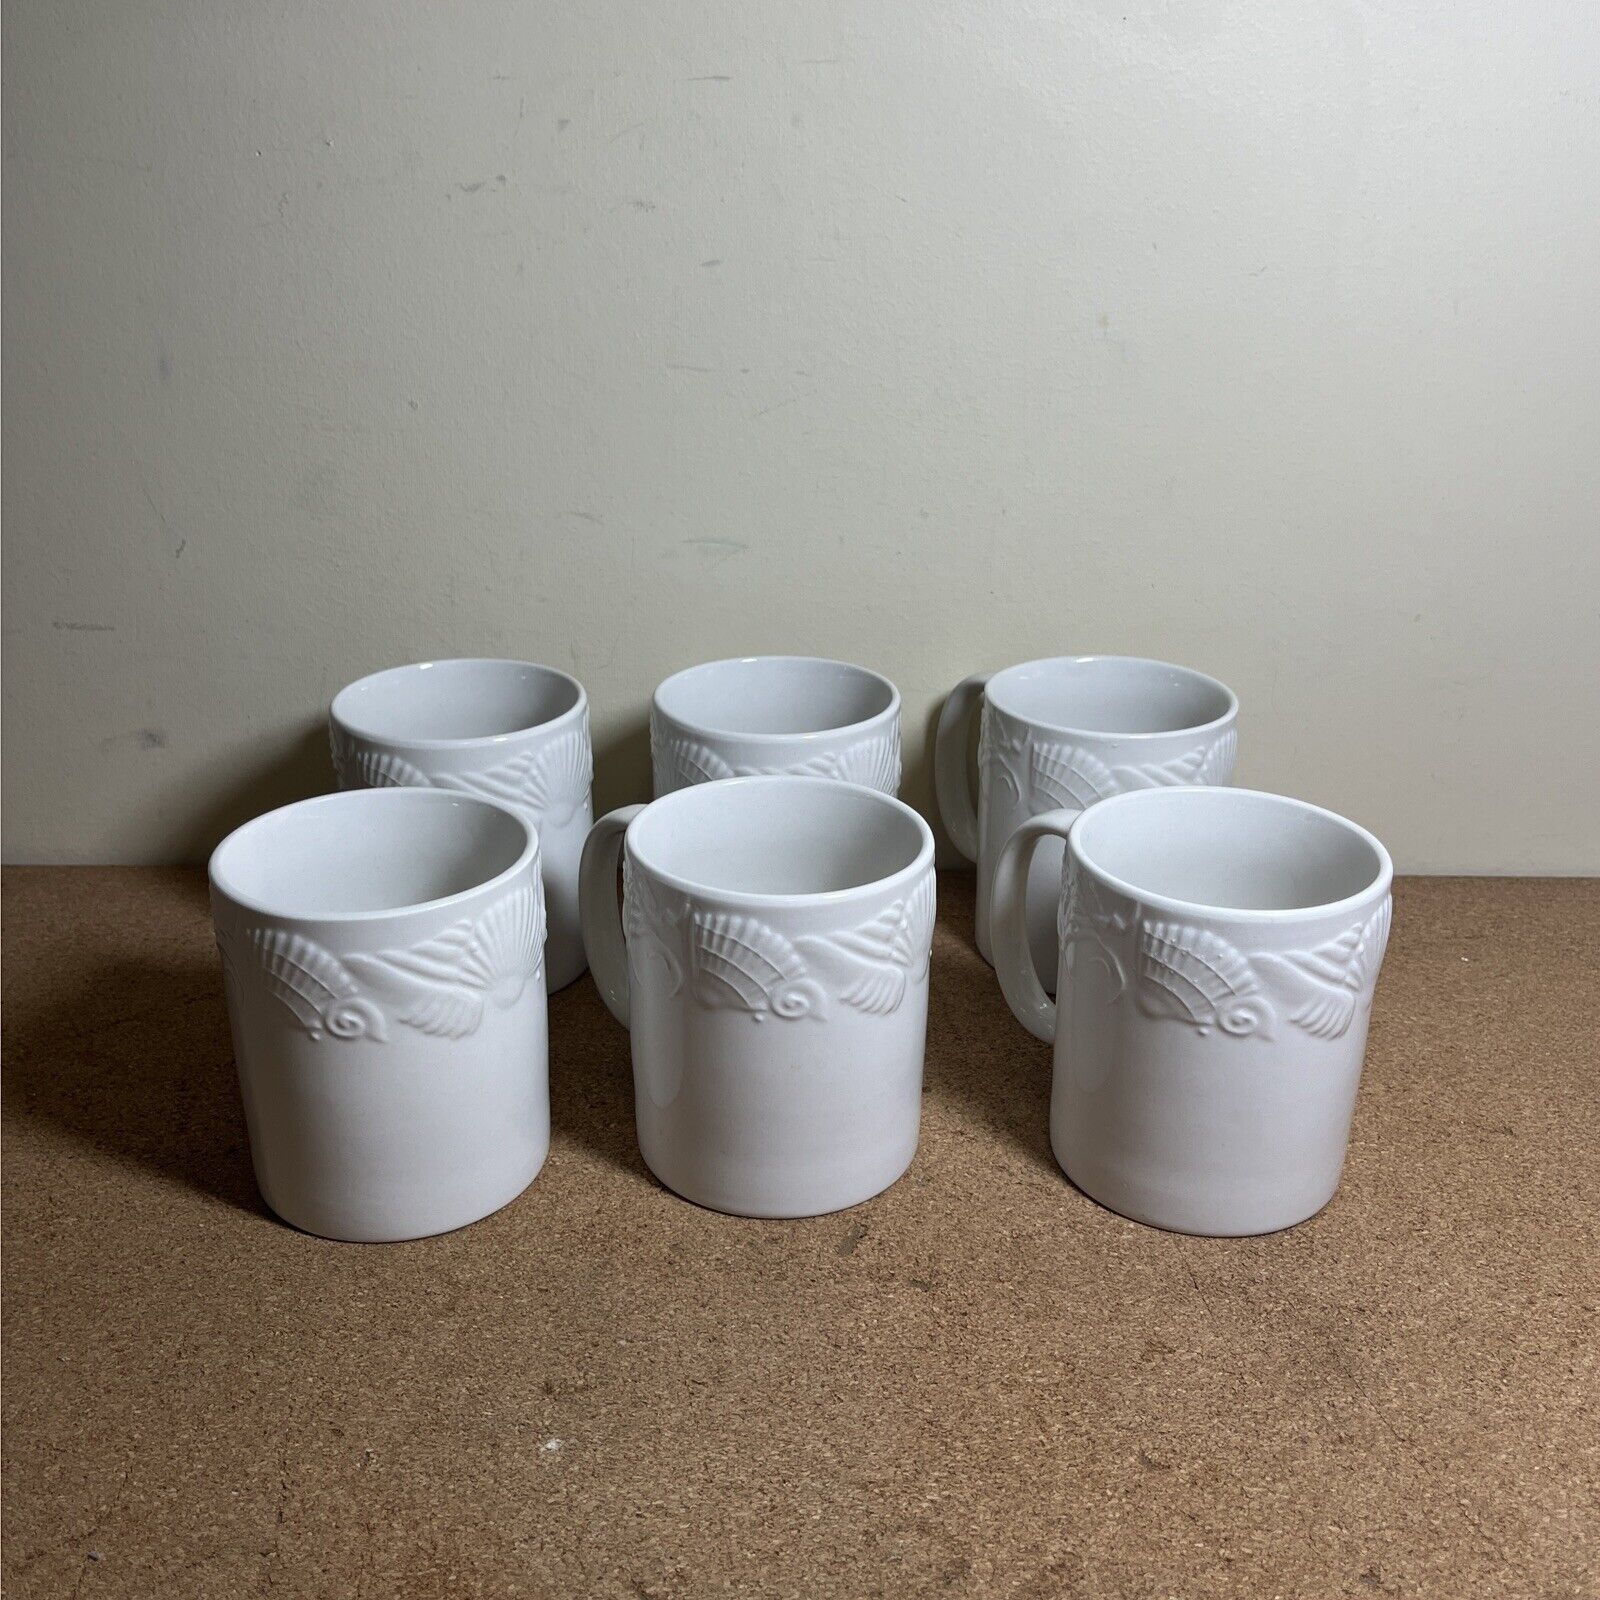 6 PFALTZGRAFF LIDO BEACH WHITE COFFEE MUGS CUPS SEASHELLS 3 5/8